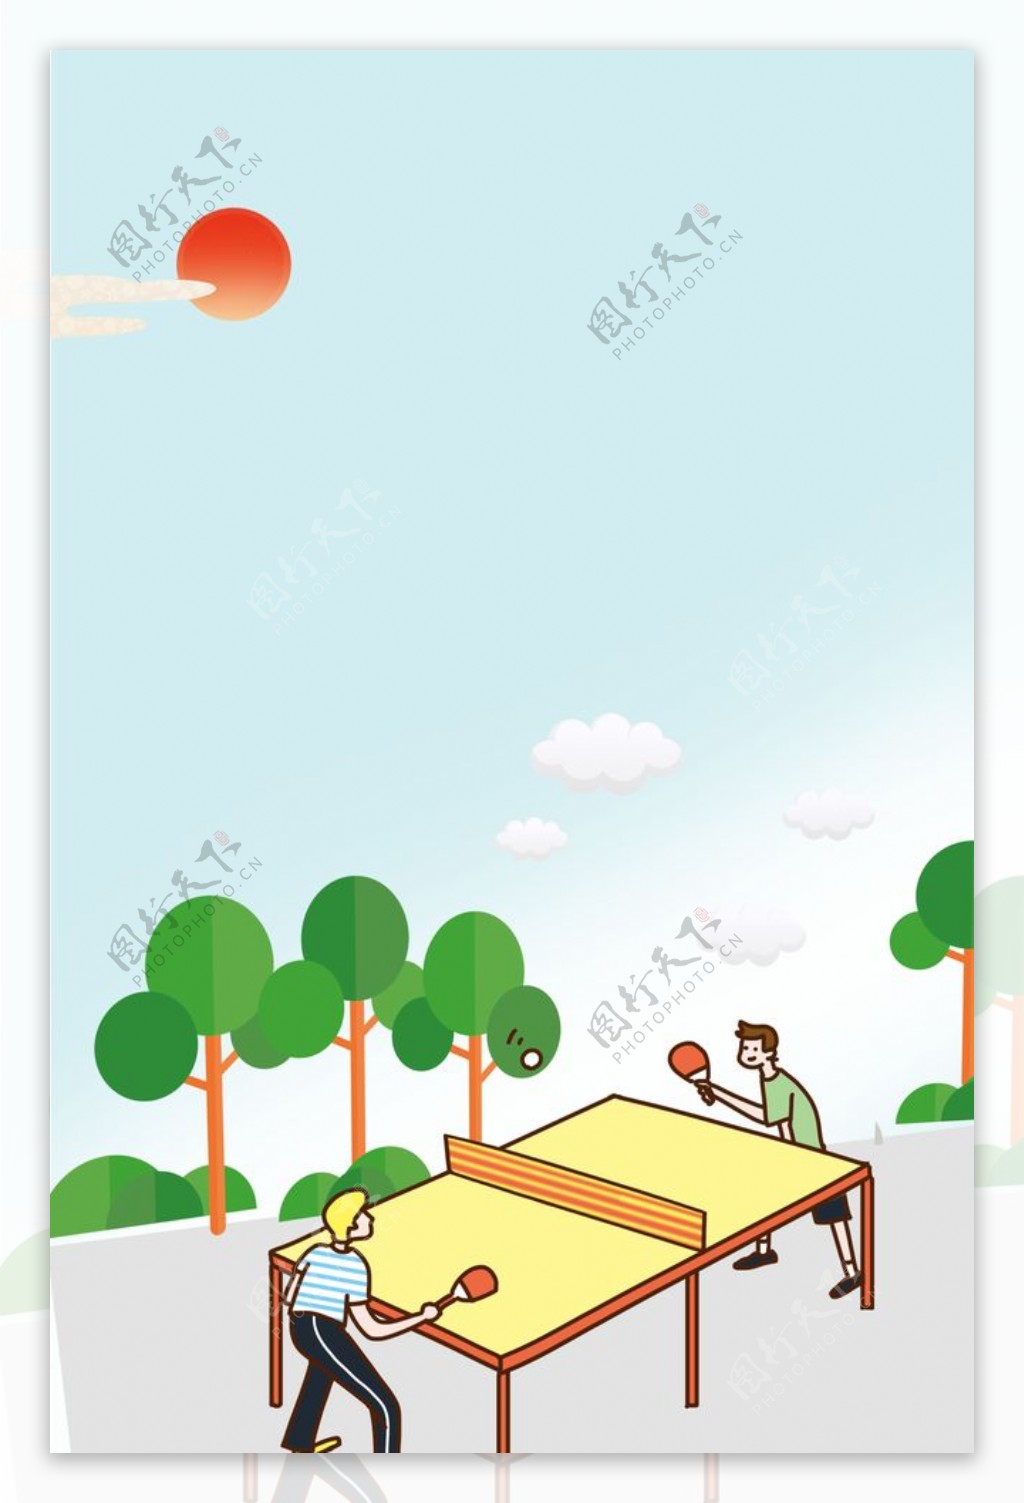 乒乓球海报